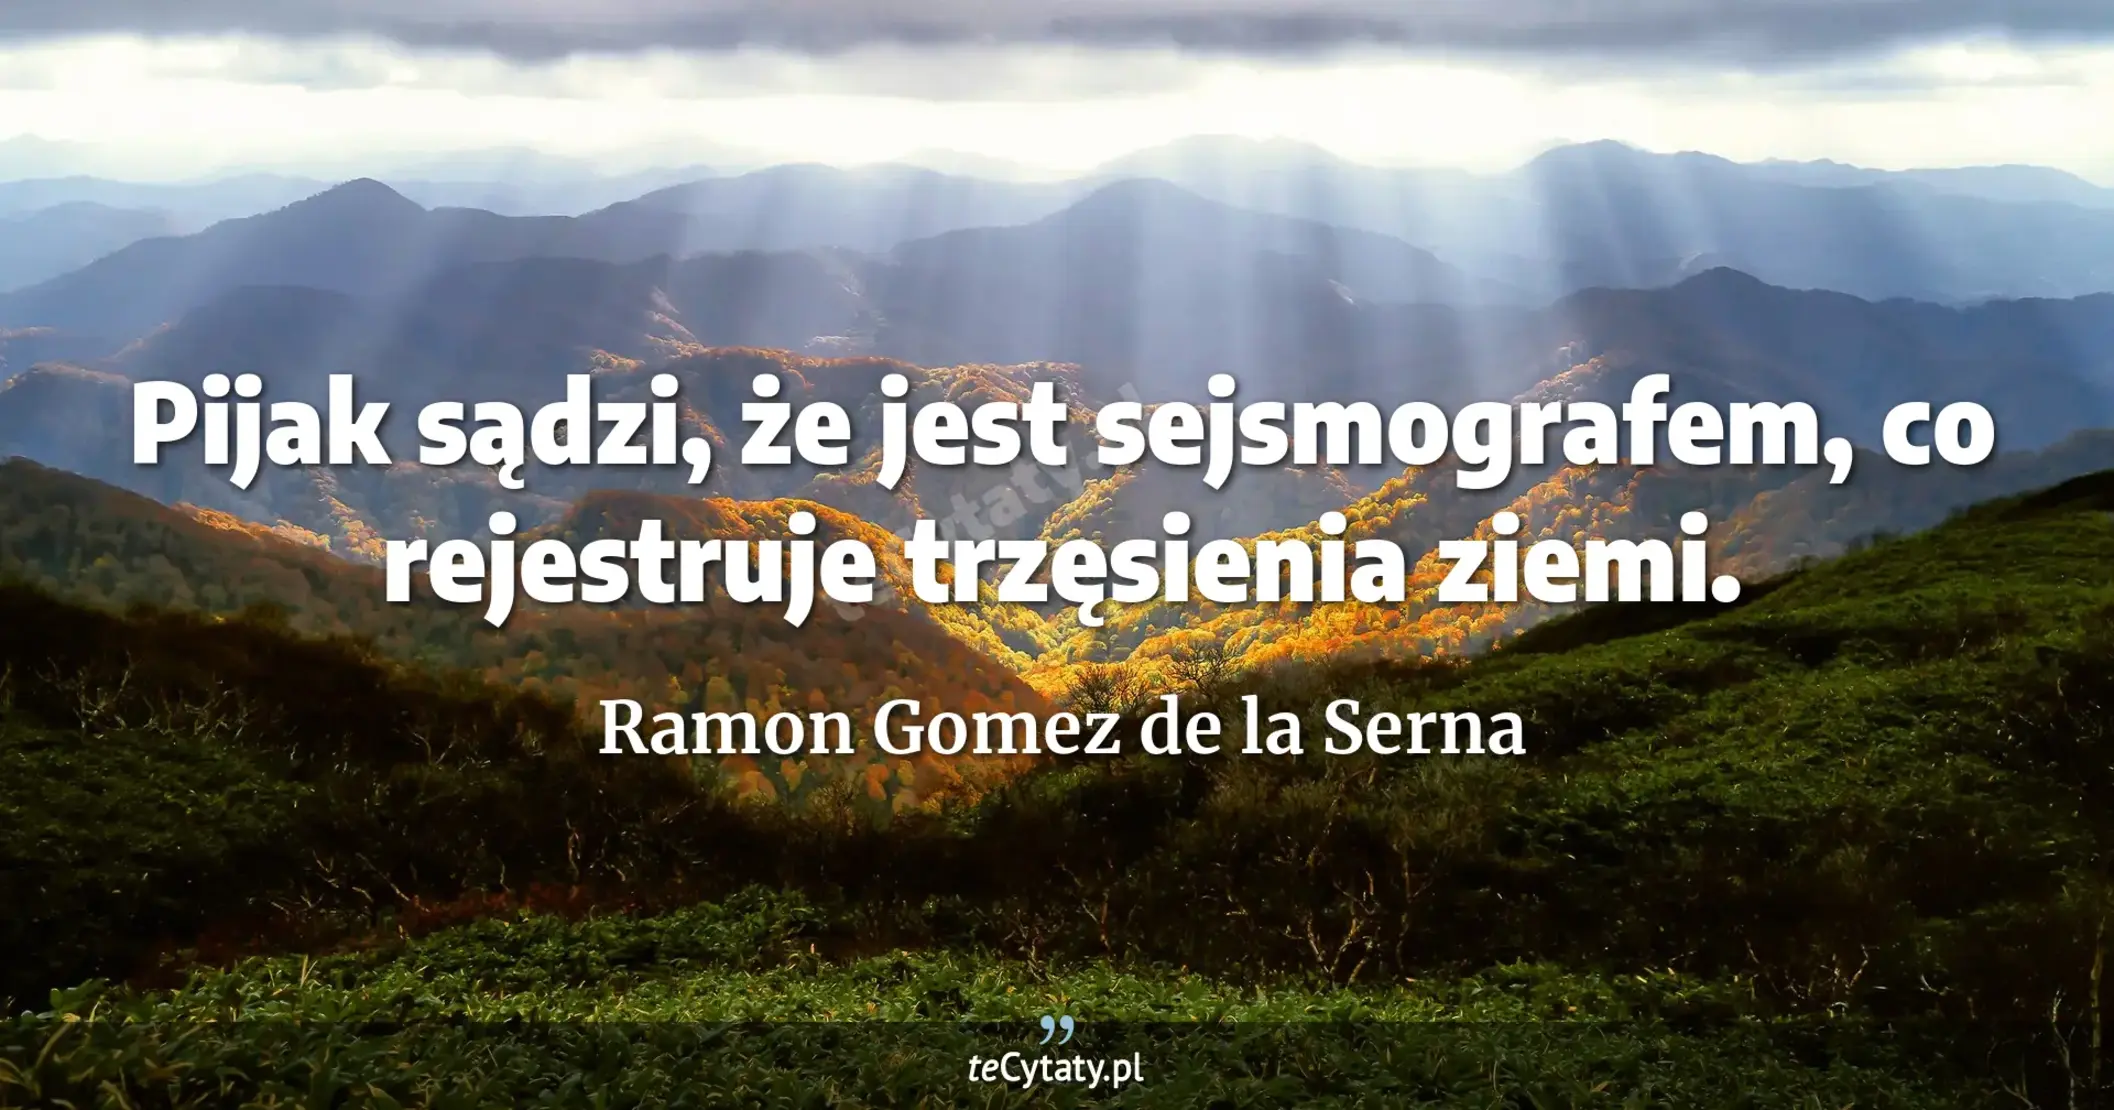 Pijak sądzi, że jest sejsmografem, co rejestruje trzęsienia ziemi. - Ramon Gomez de la Serna